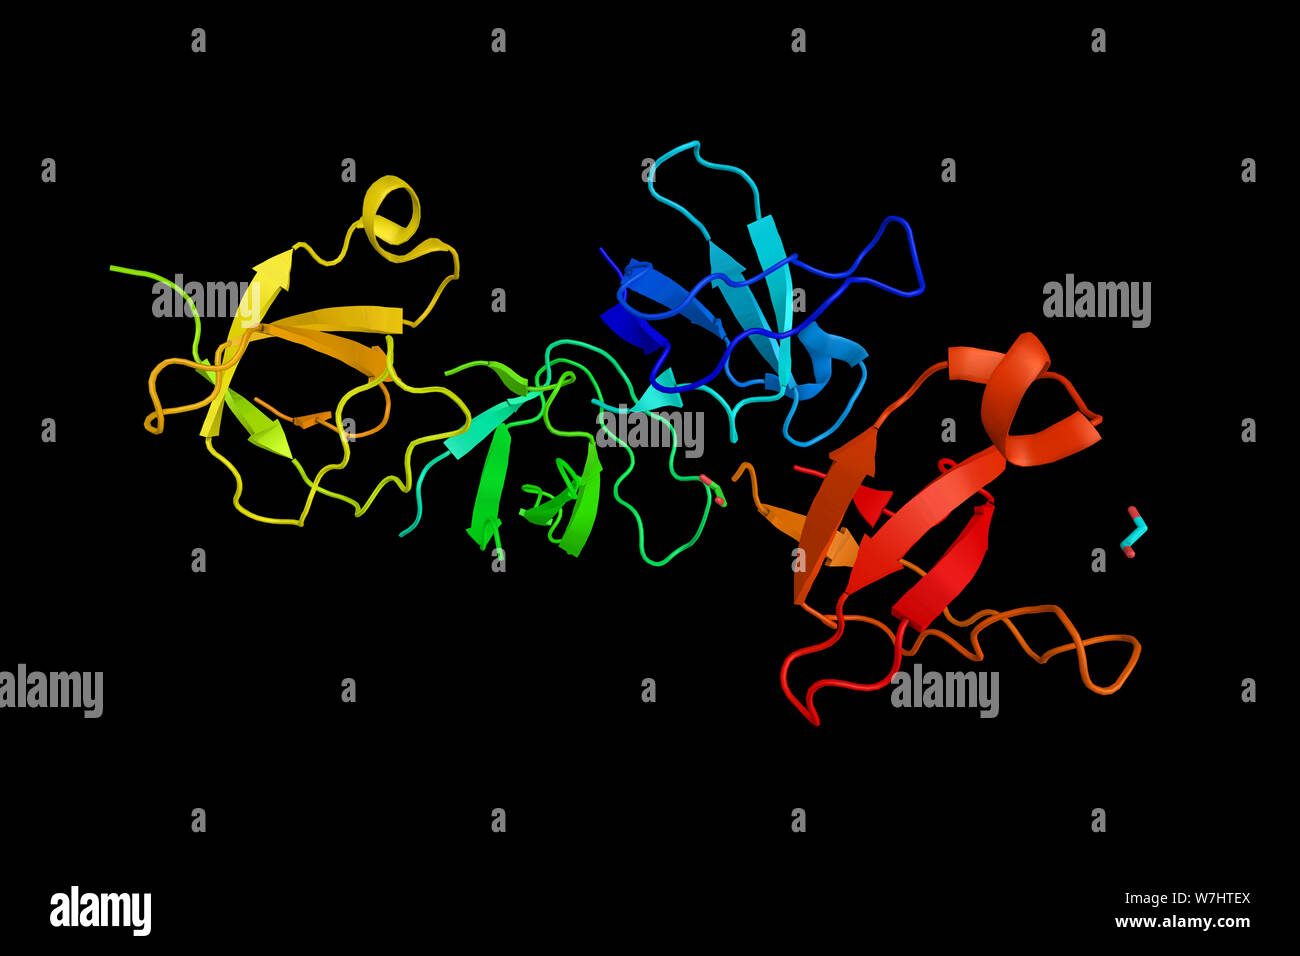 Protéine kinase activée par des kinase kinase, une enzyme 10 participent à facteur de croissance nerveuse (NGF) induit l'apoptose neuronale. Rende 3d Banque D'Images